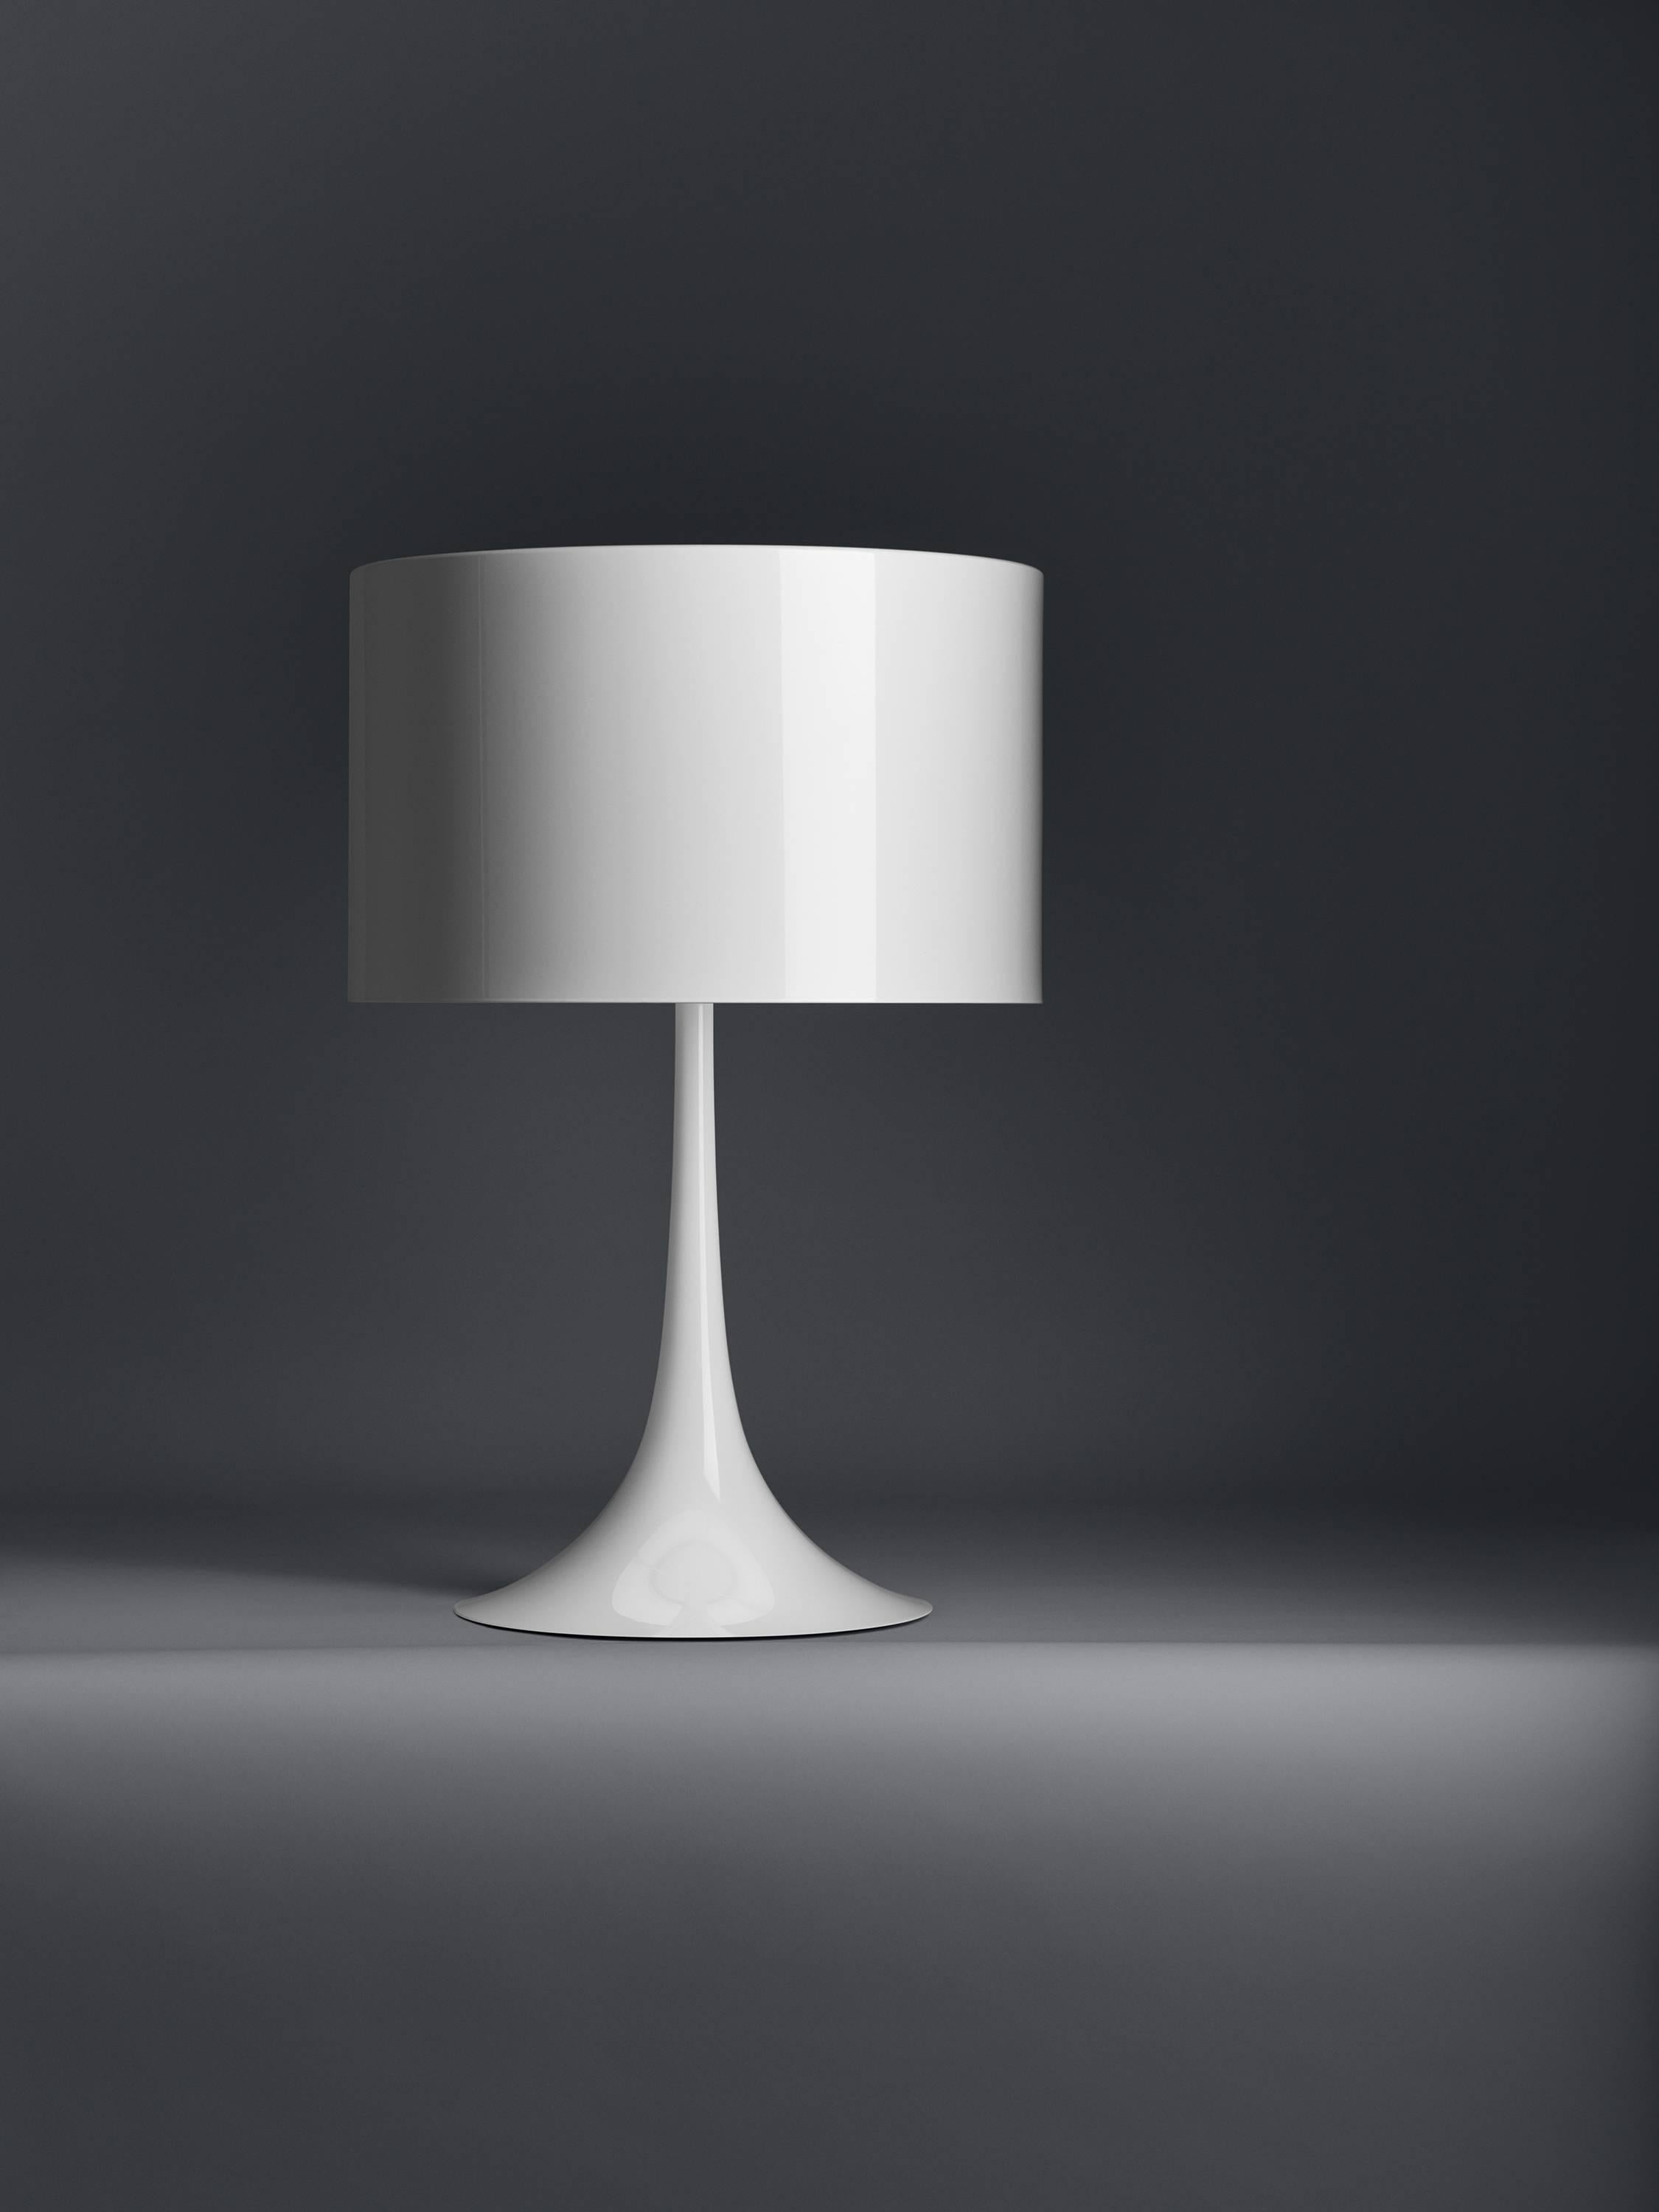 Die 2003 von Sebastian Wrong entworfene Tischleuchte Spun Light-T spiegelt das Beste der modernen Fertigungstechnologie in Kombination mit Eleganz, Handwerkskunst und dynamischer, fließender Ästhetik wider.

Der Hauptkörper besteht aus einem Rahmen